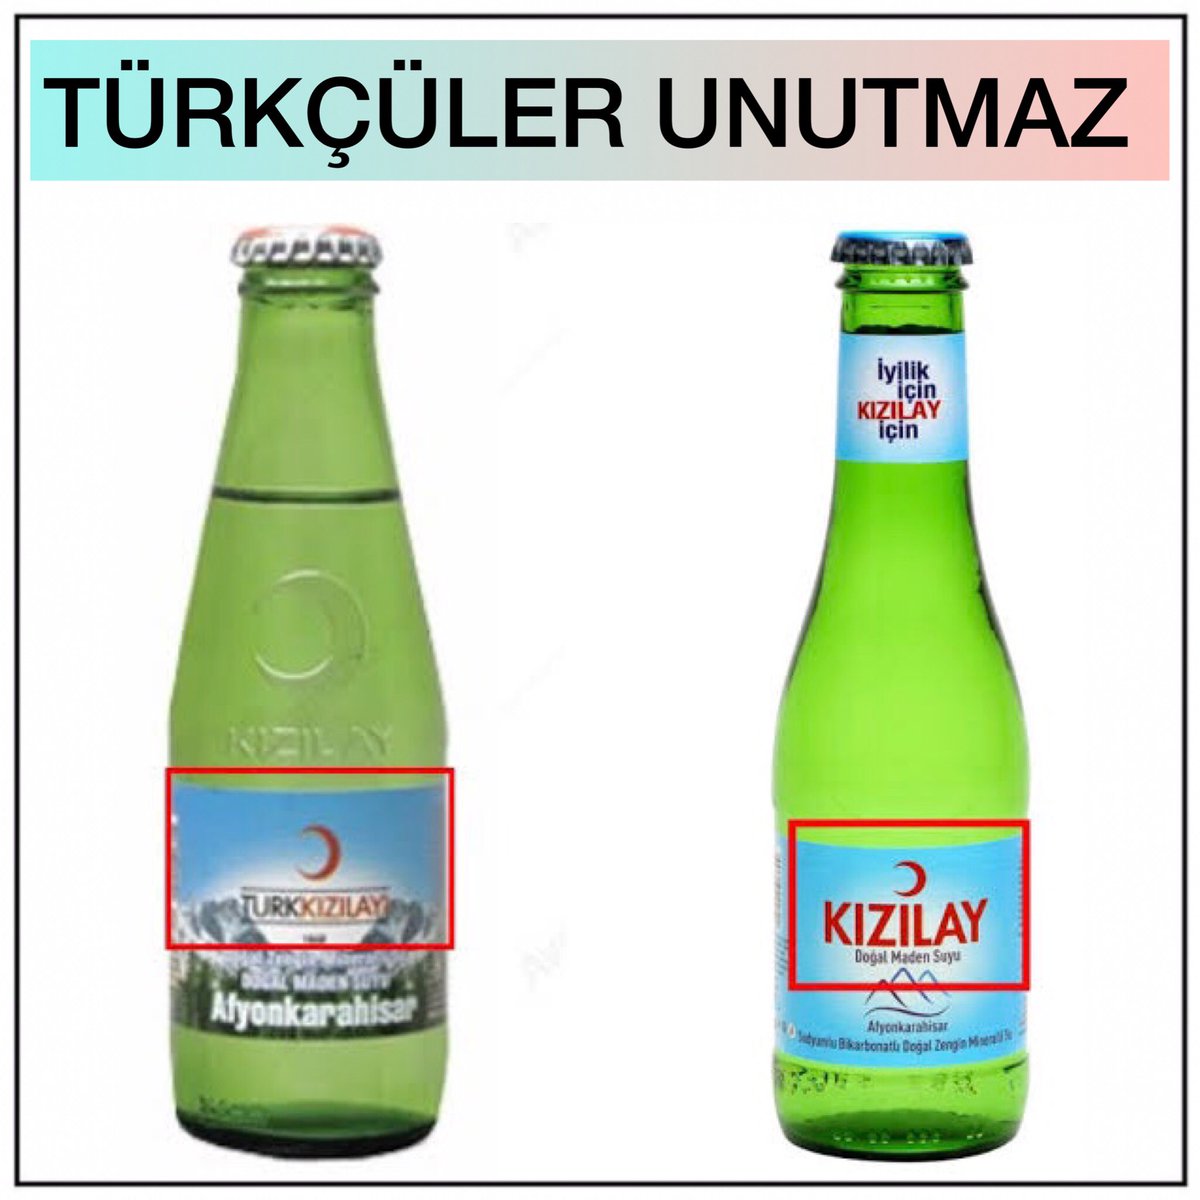 Kızılay, 2014’de çözüm sürecinin etkisiyle “Türk Kızılayı” adıyla sattığı maden sularından Türk’ü kaldırarak “Kızılay” olarak piyasaya sürmüştü!

“TÜRKİYE TÜRKLERİNDİR!”
#TürkKızılayı